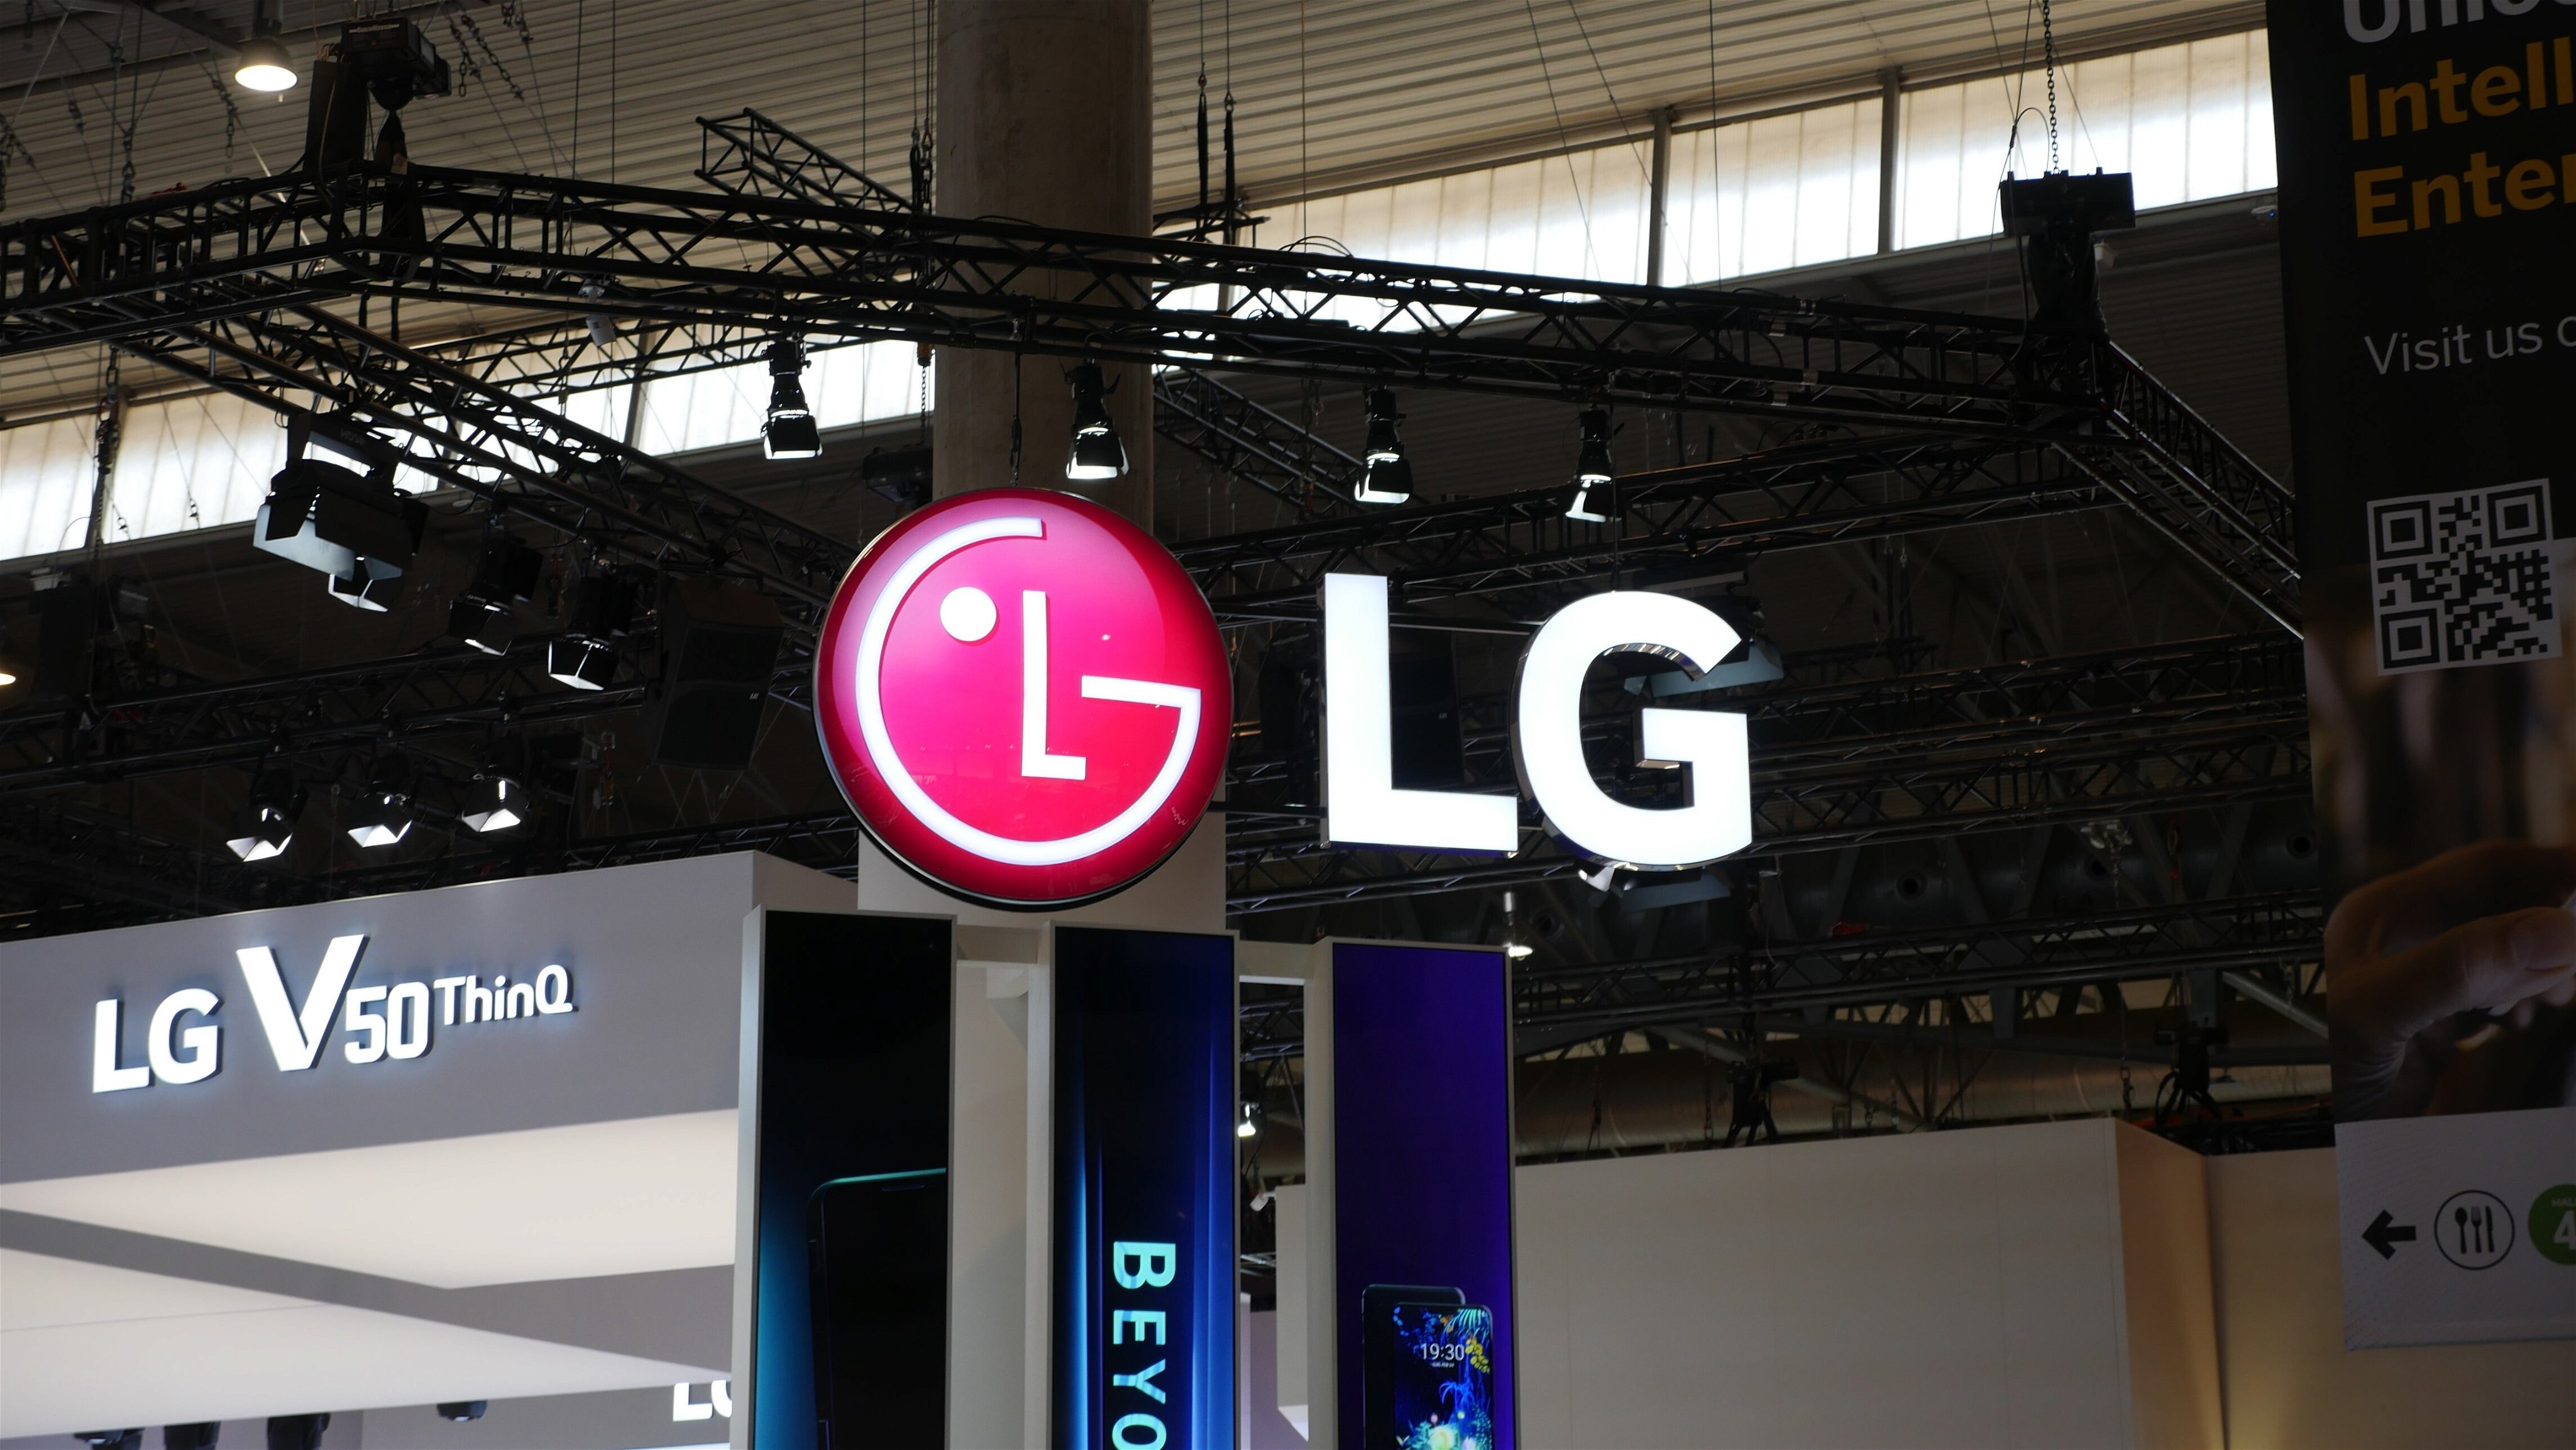 Logo da LG